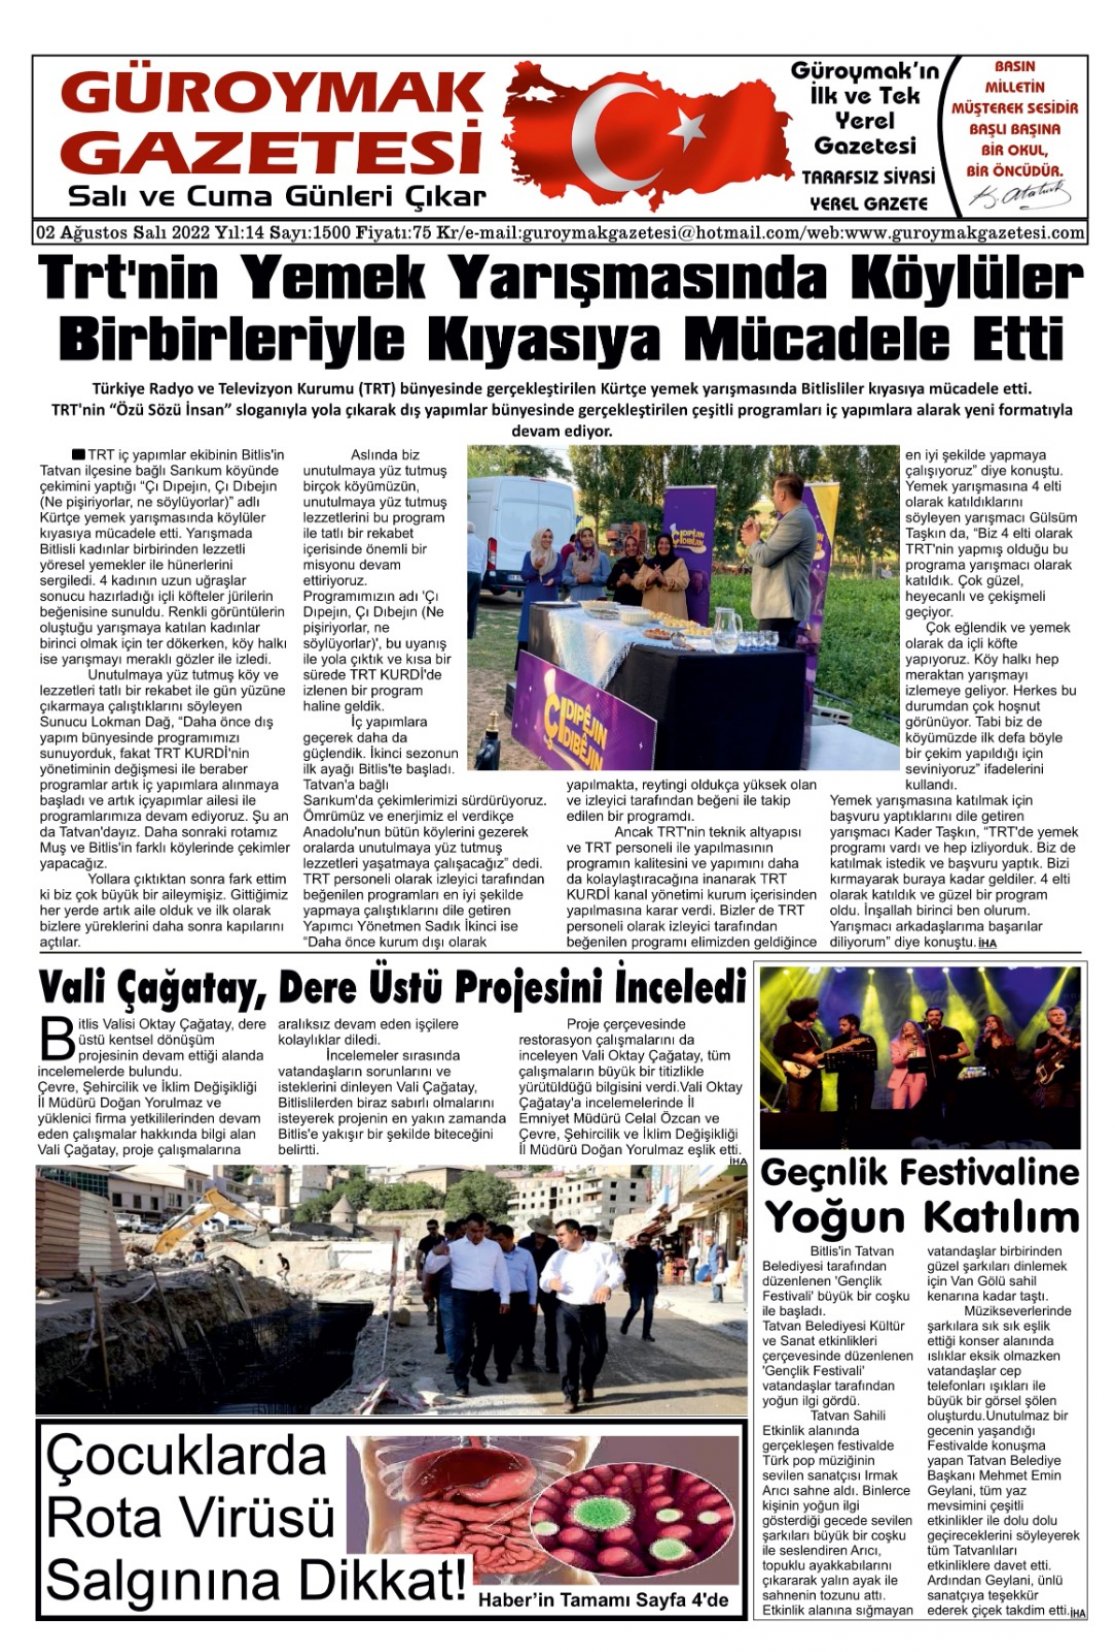 Güroymak Gazetesi WhatsApp Image 2022-08-02 at 01.35.21.jpeg Sayılı Gazete Küpürü